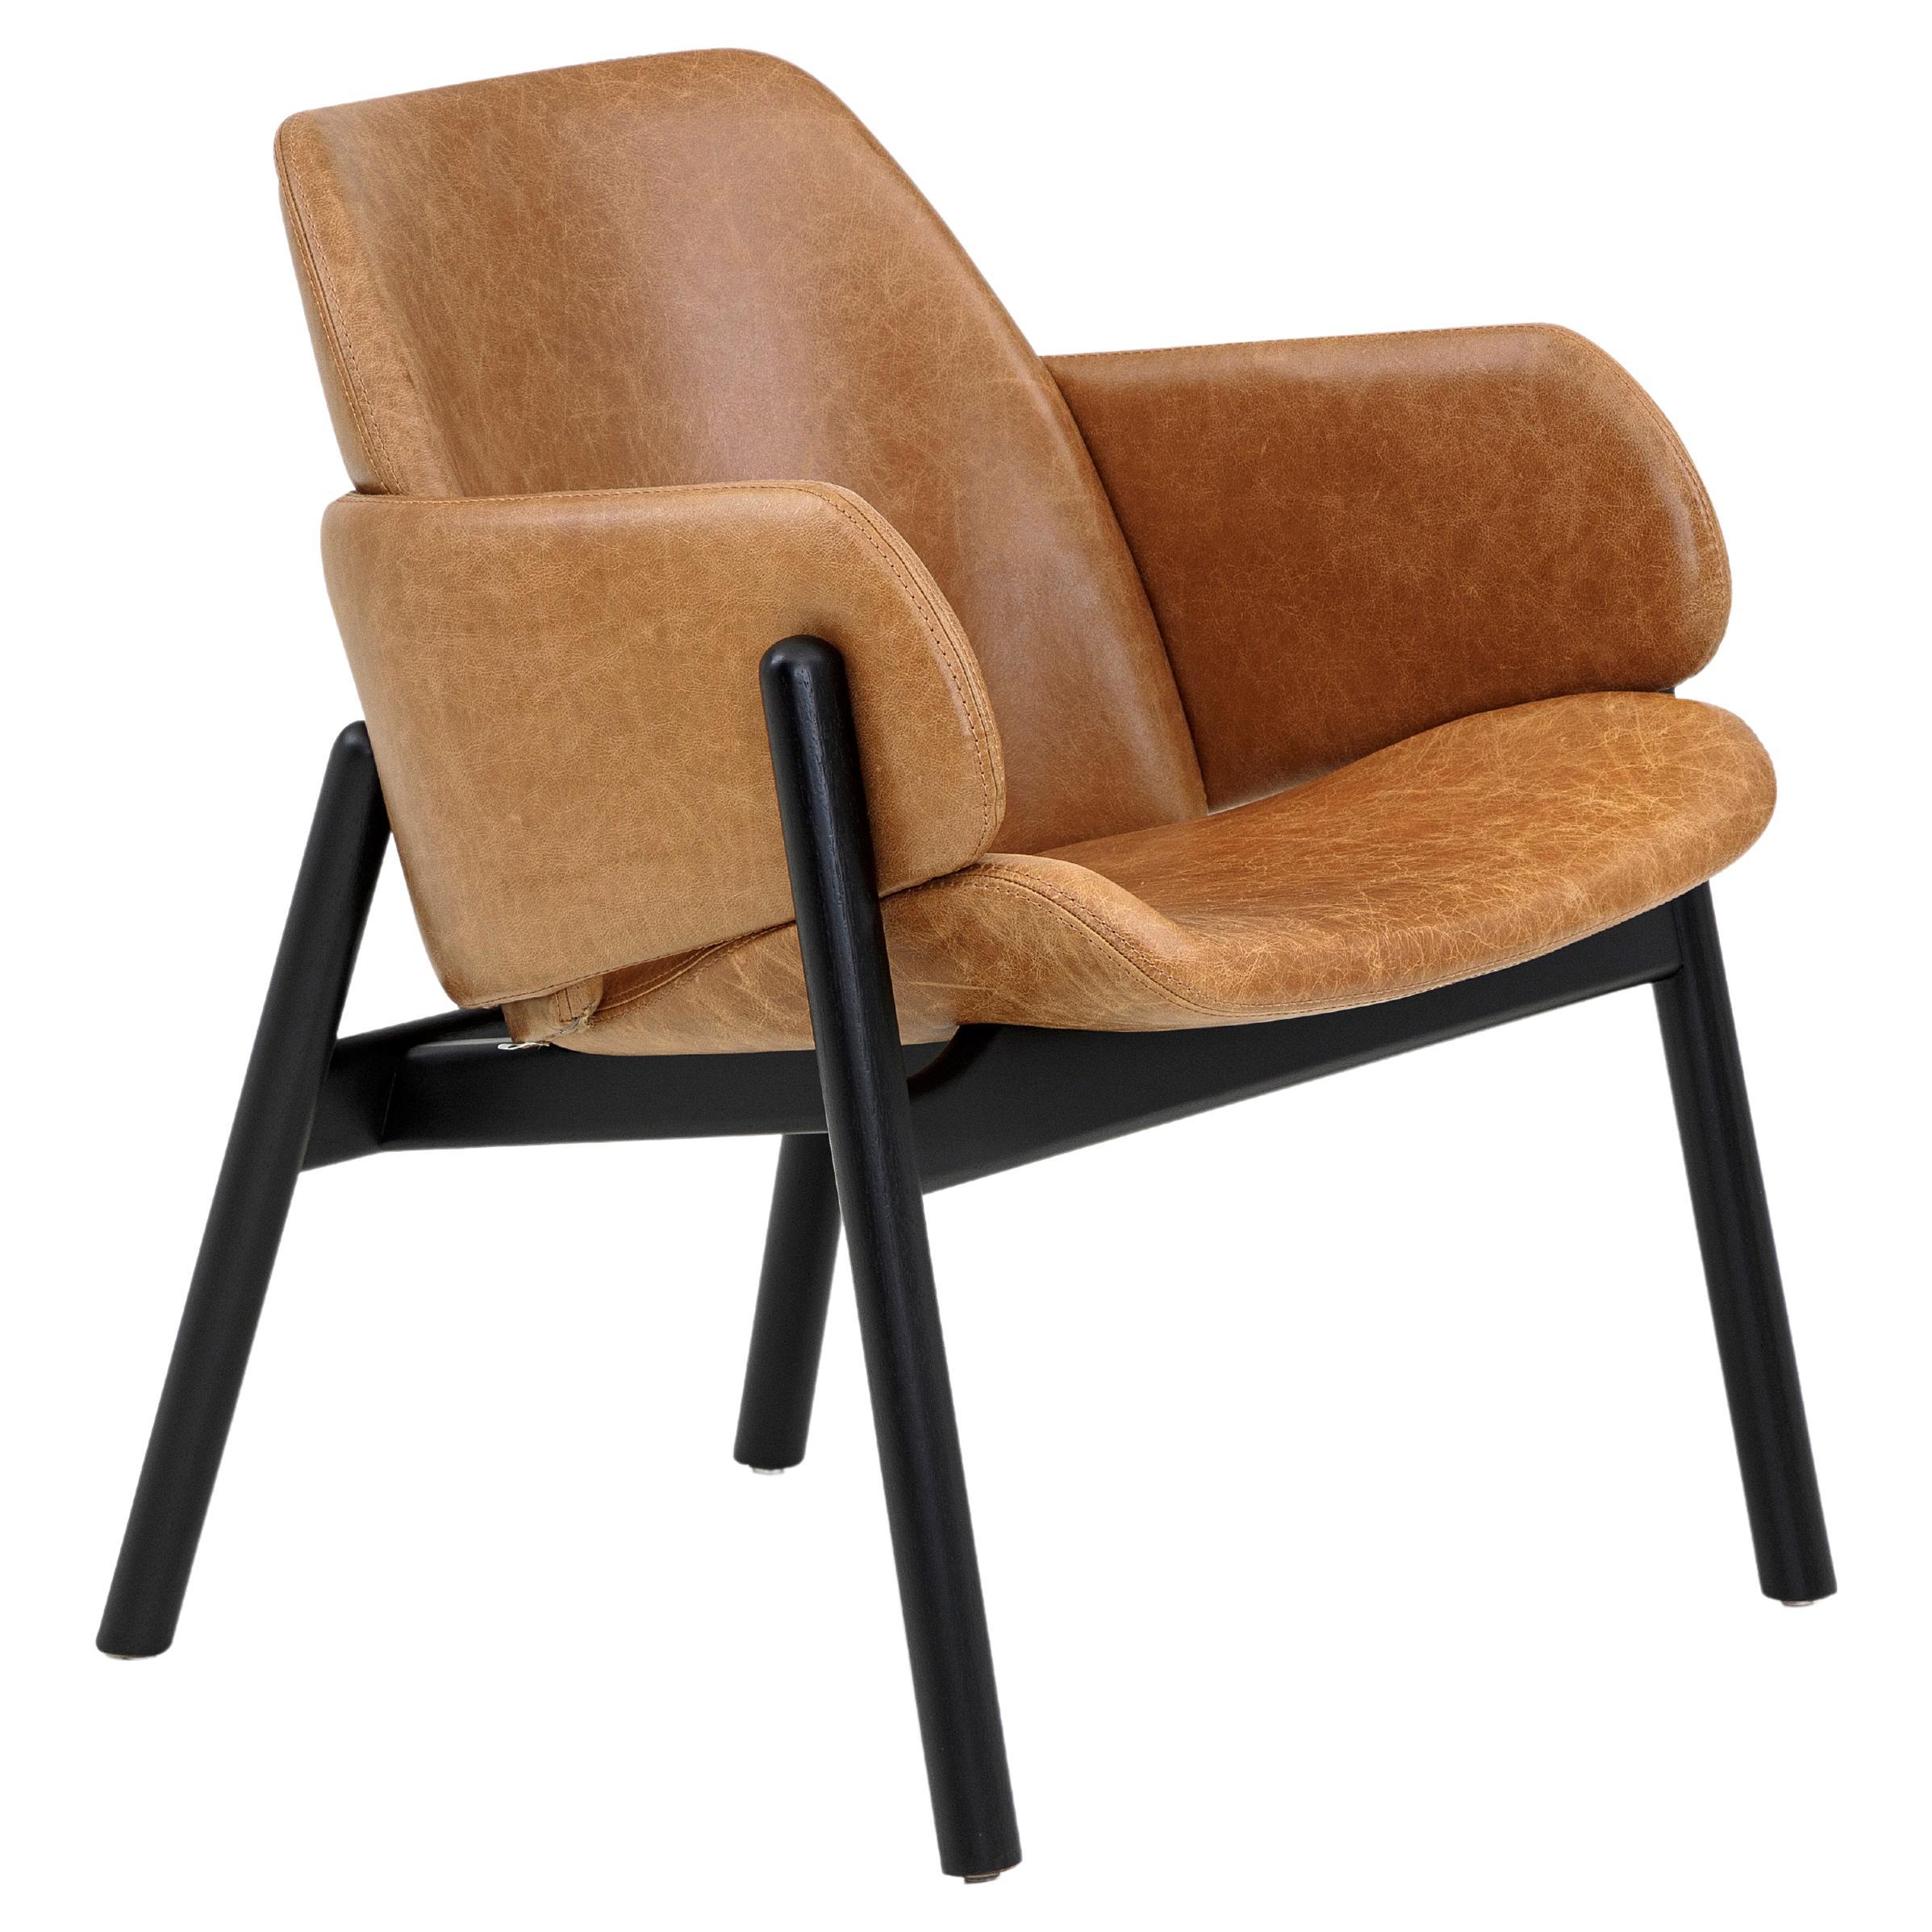 Oben-Stuhl aus braunem Leder und schwarz lackiertem Rahmen